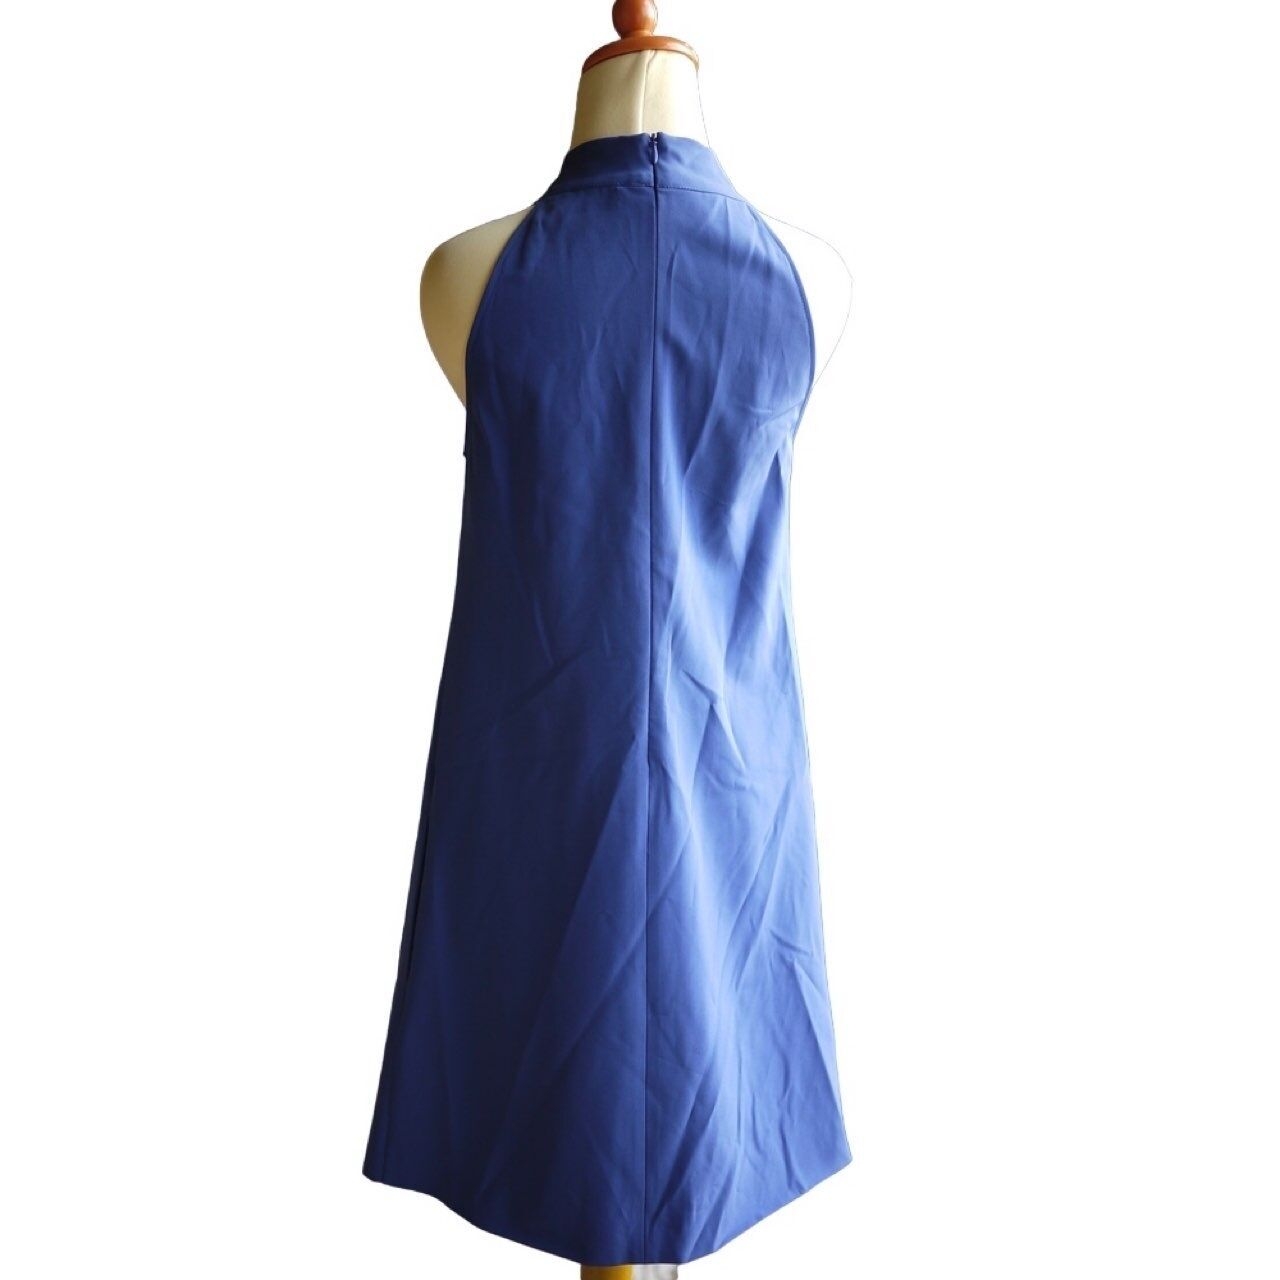 Love Moschino Dark Blue Organic Mini Dress